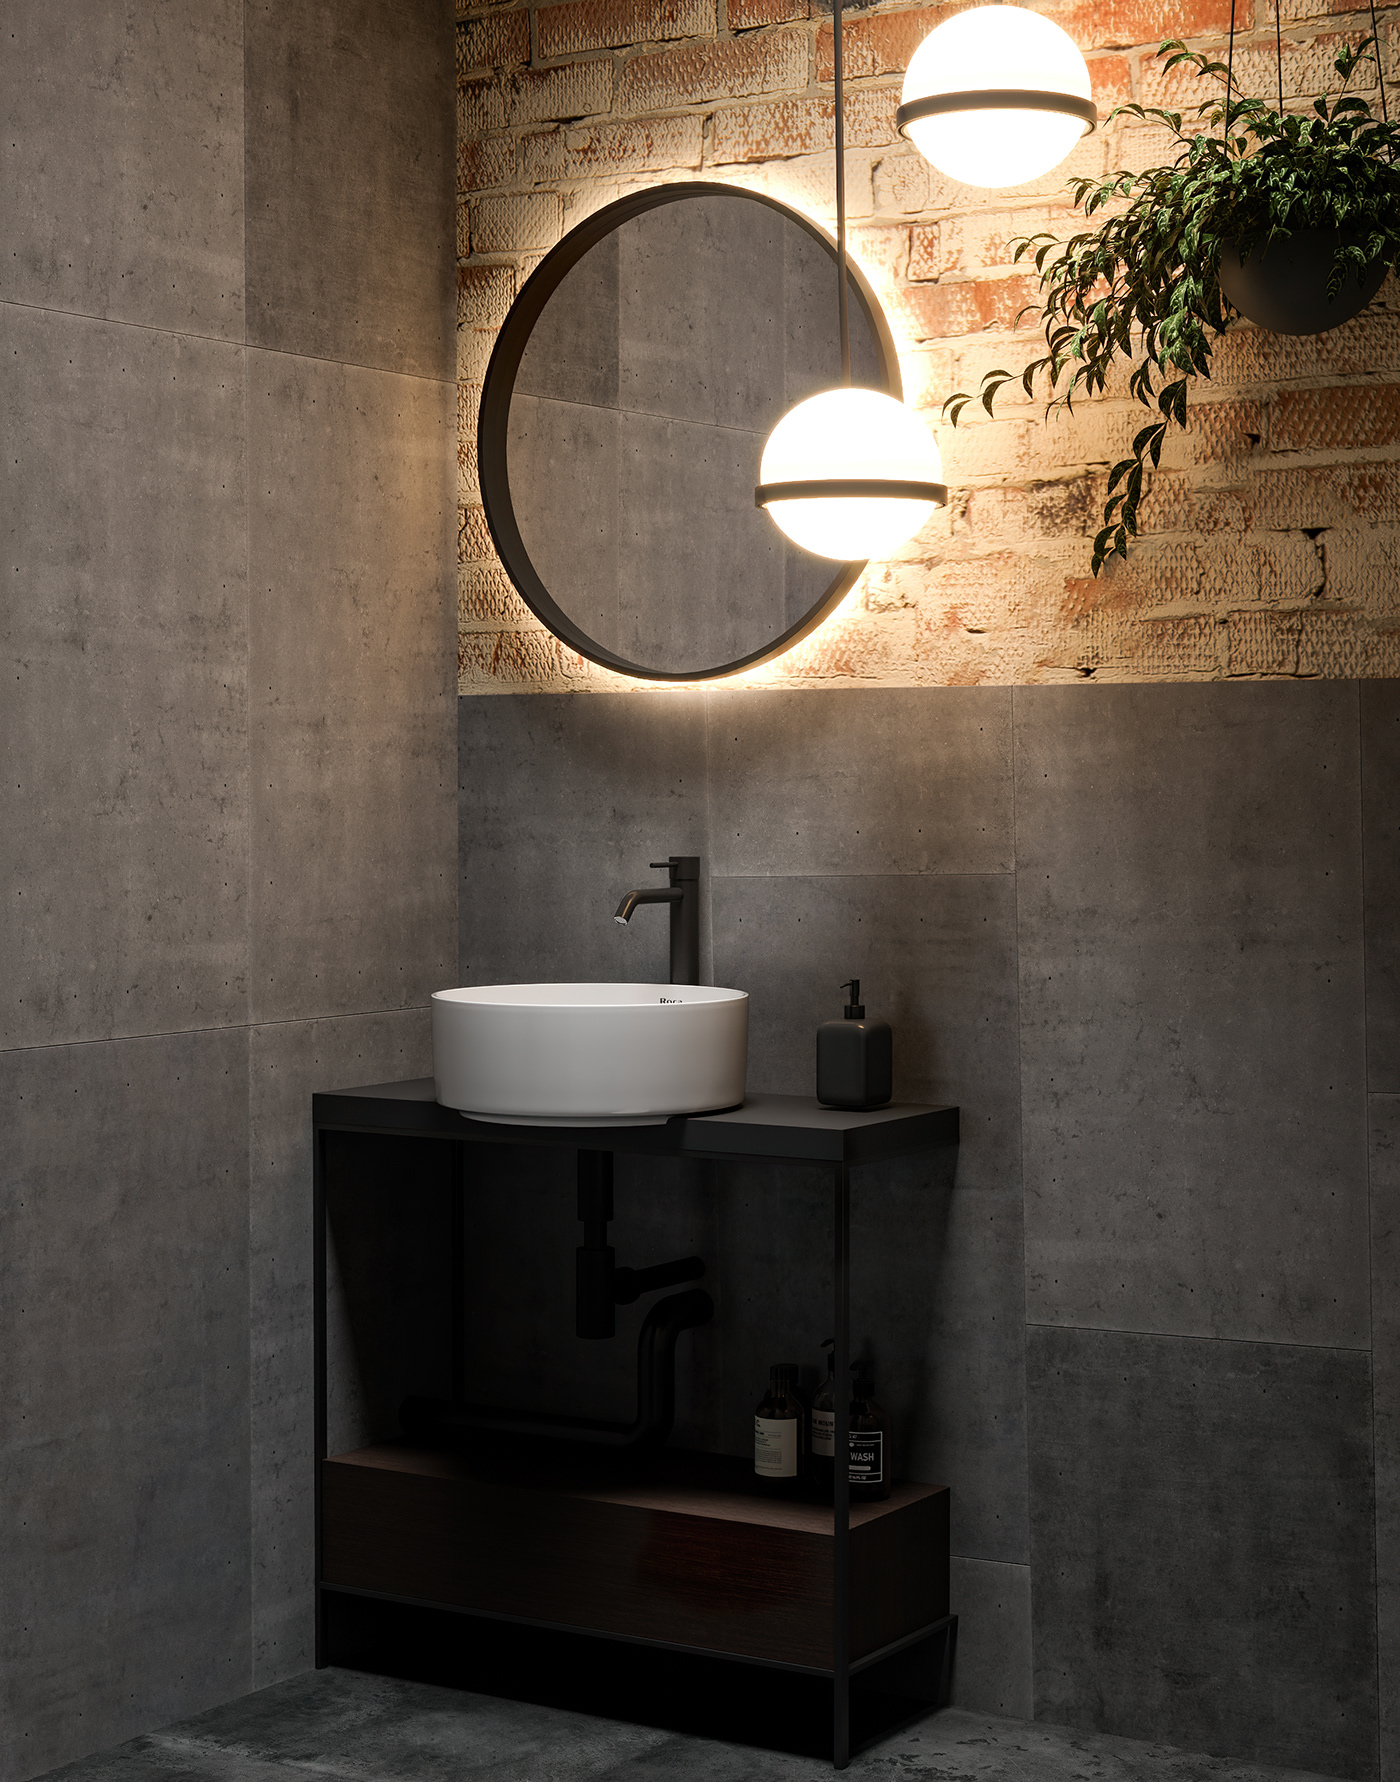 3ds max architecture bathroom bathroom design corona Interior interior design  Render visualization wall